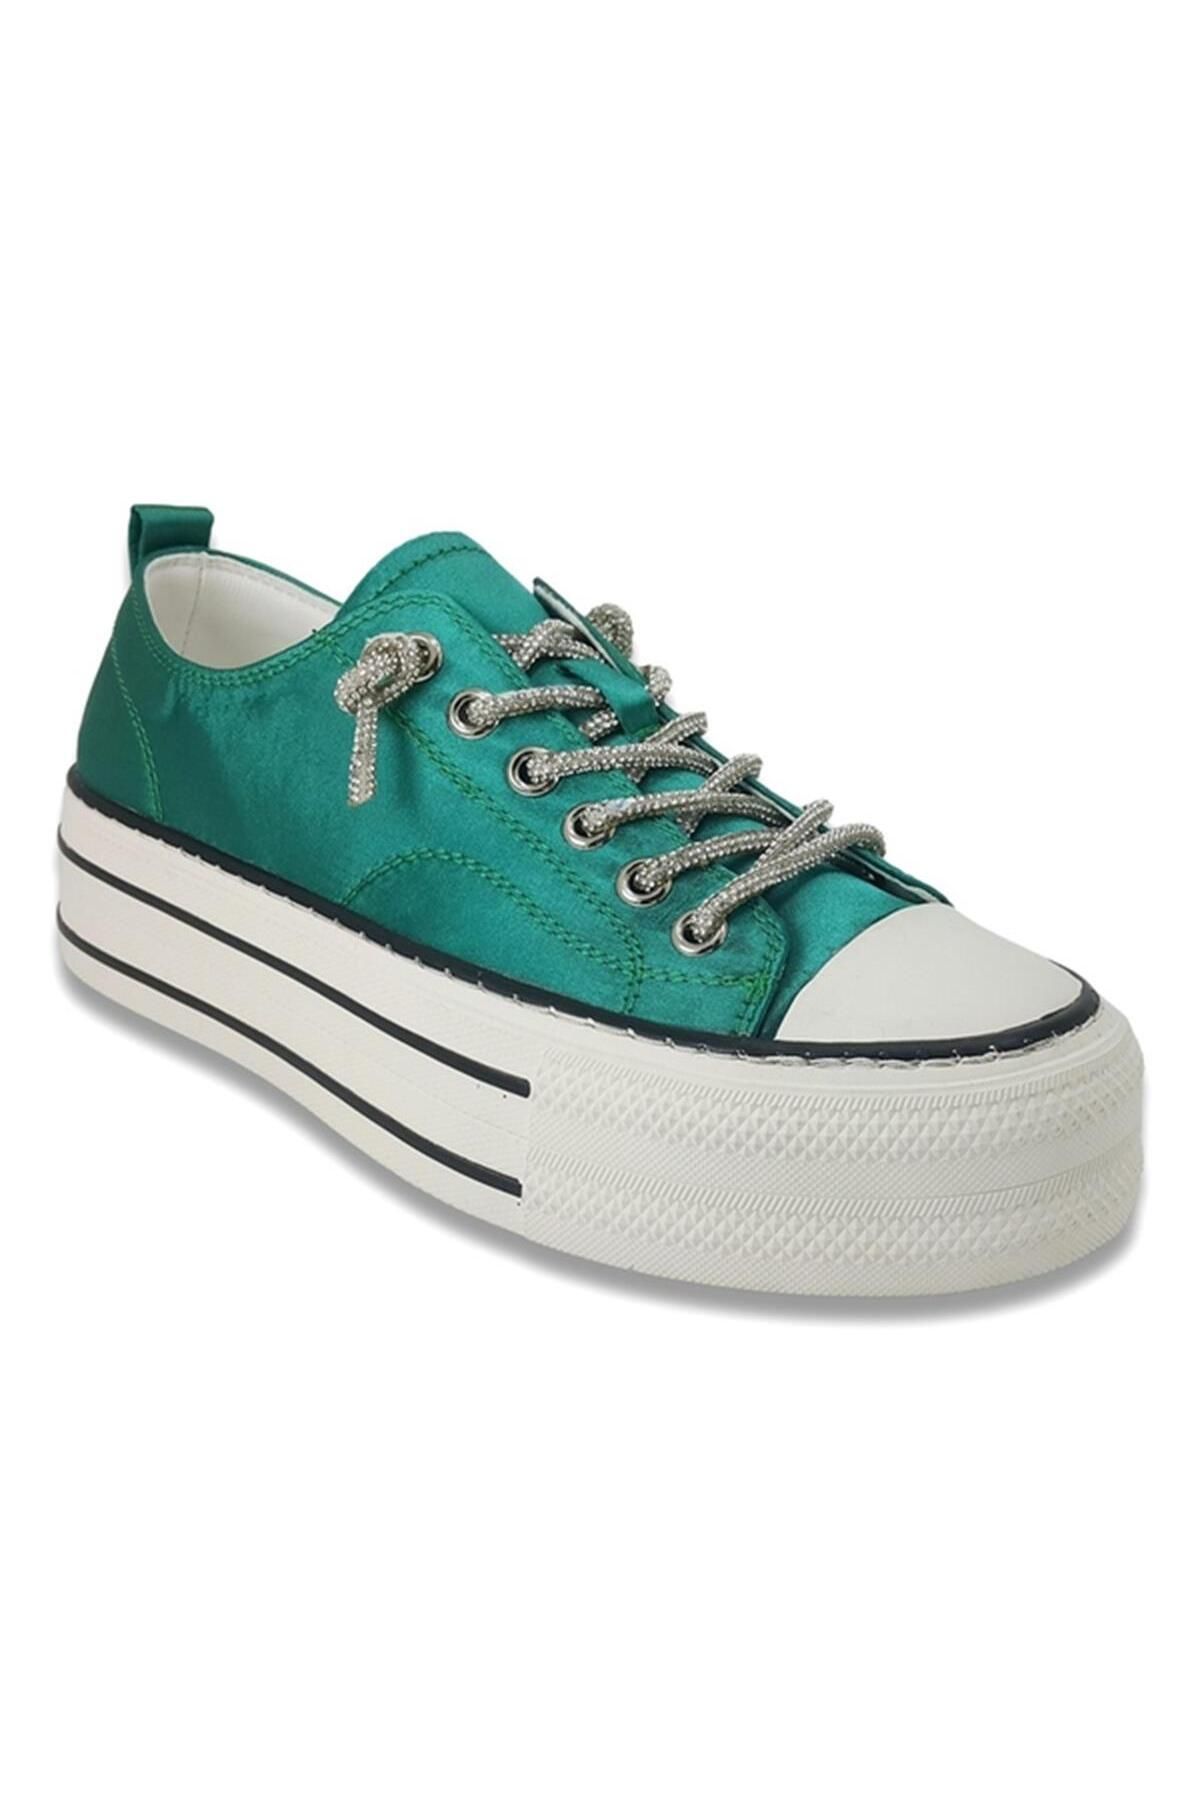 Guja 406 23ya Sneaker Günlük Ayakkabı - Yeşil